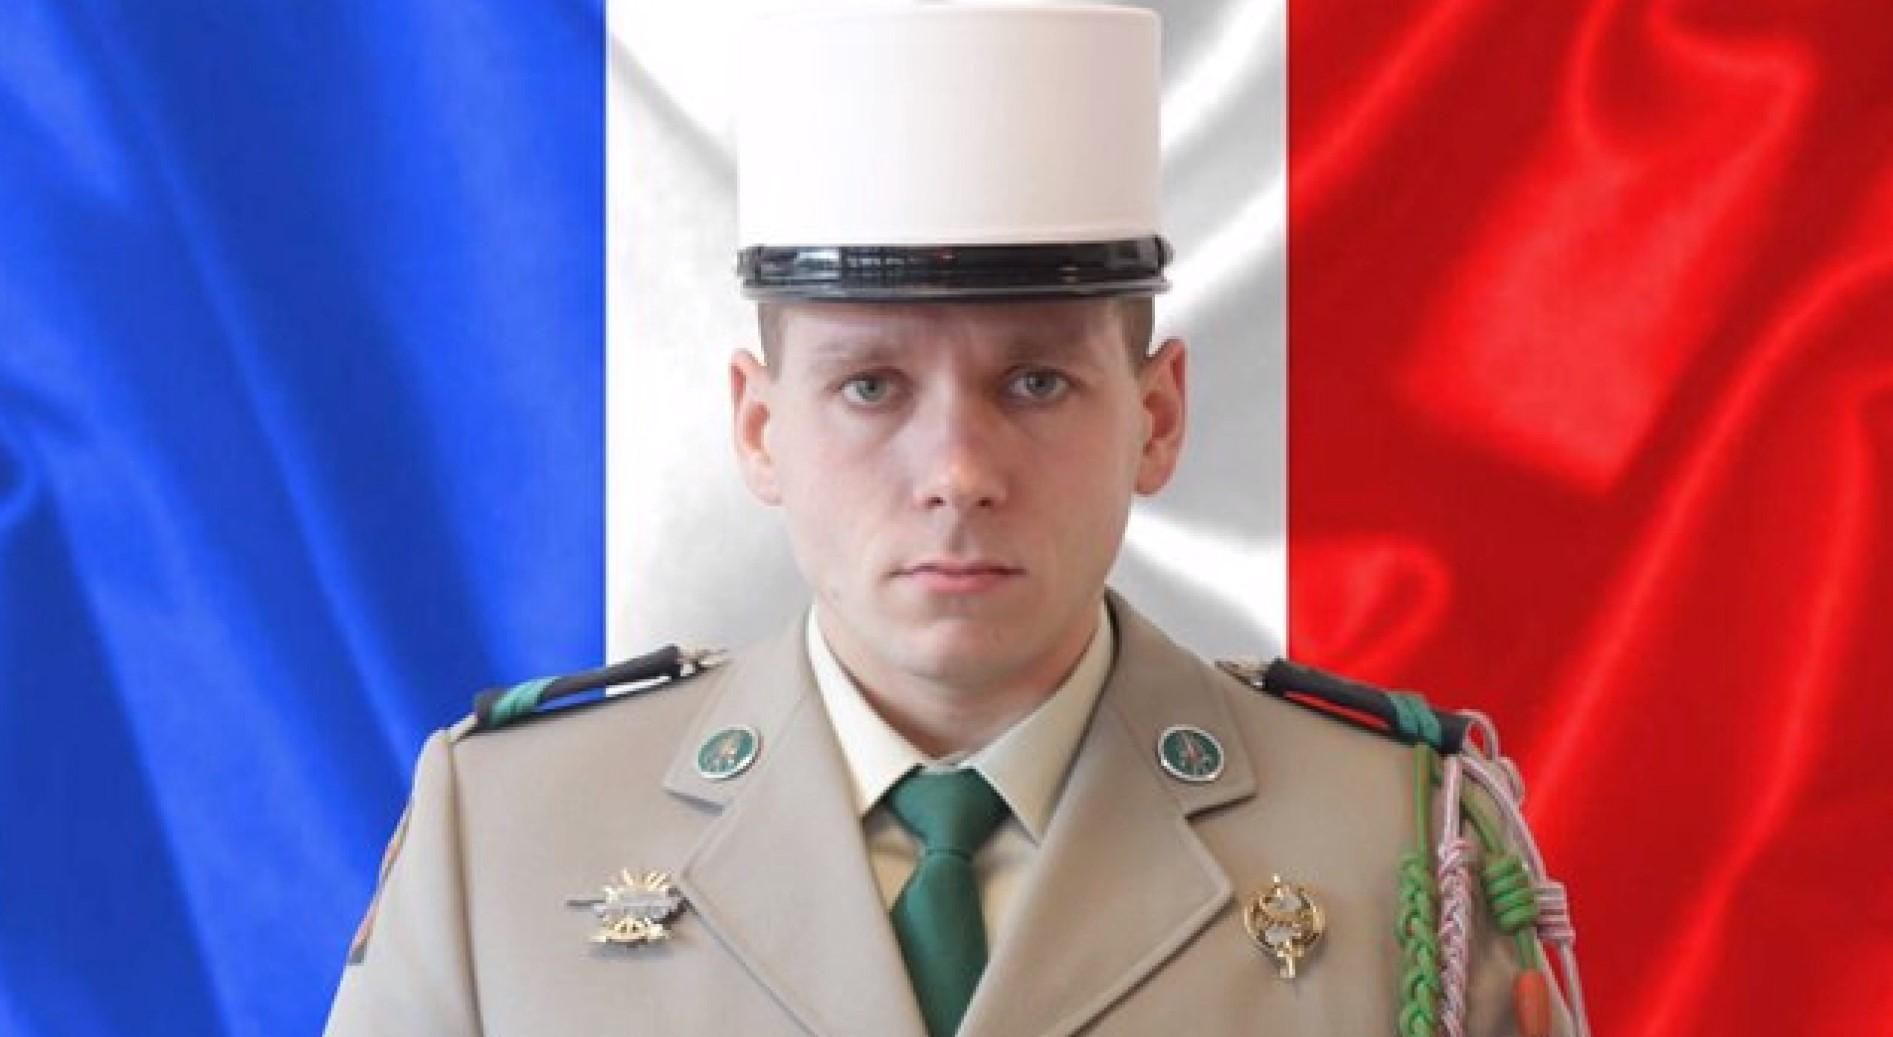 Гибель французского легионера из Украины в Мали: руководство Франции выразило соболезнования